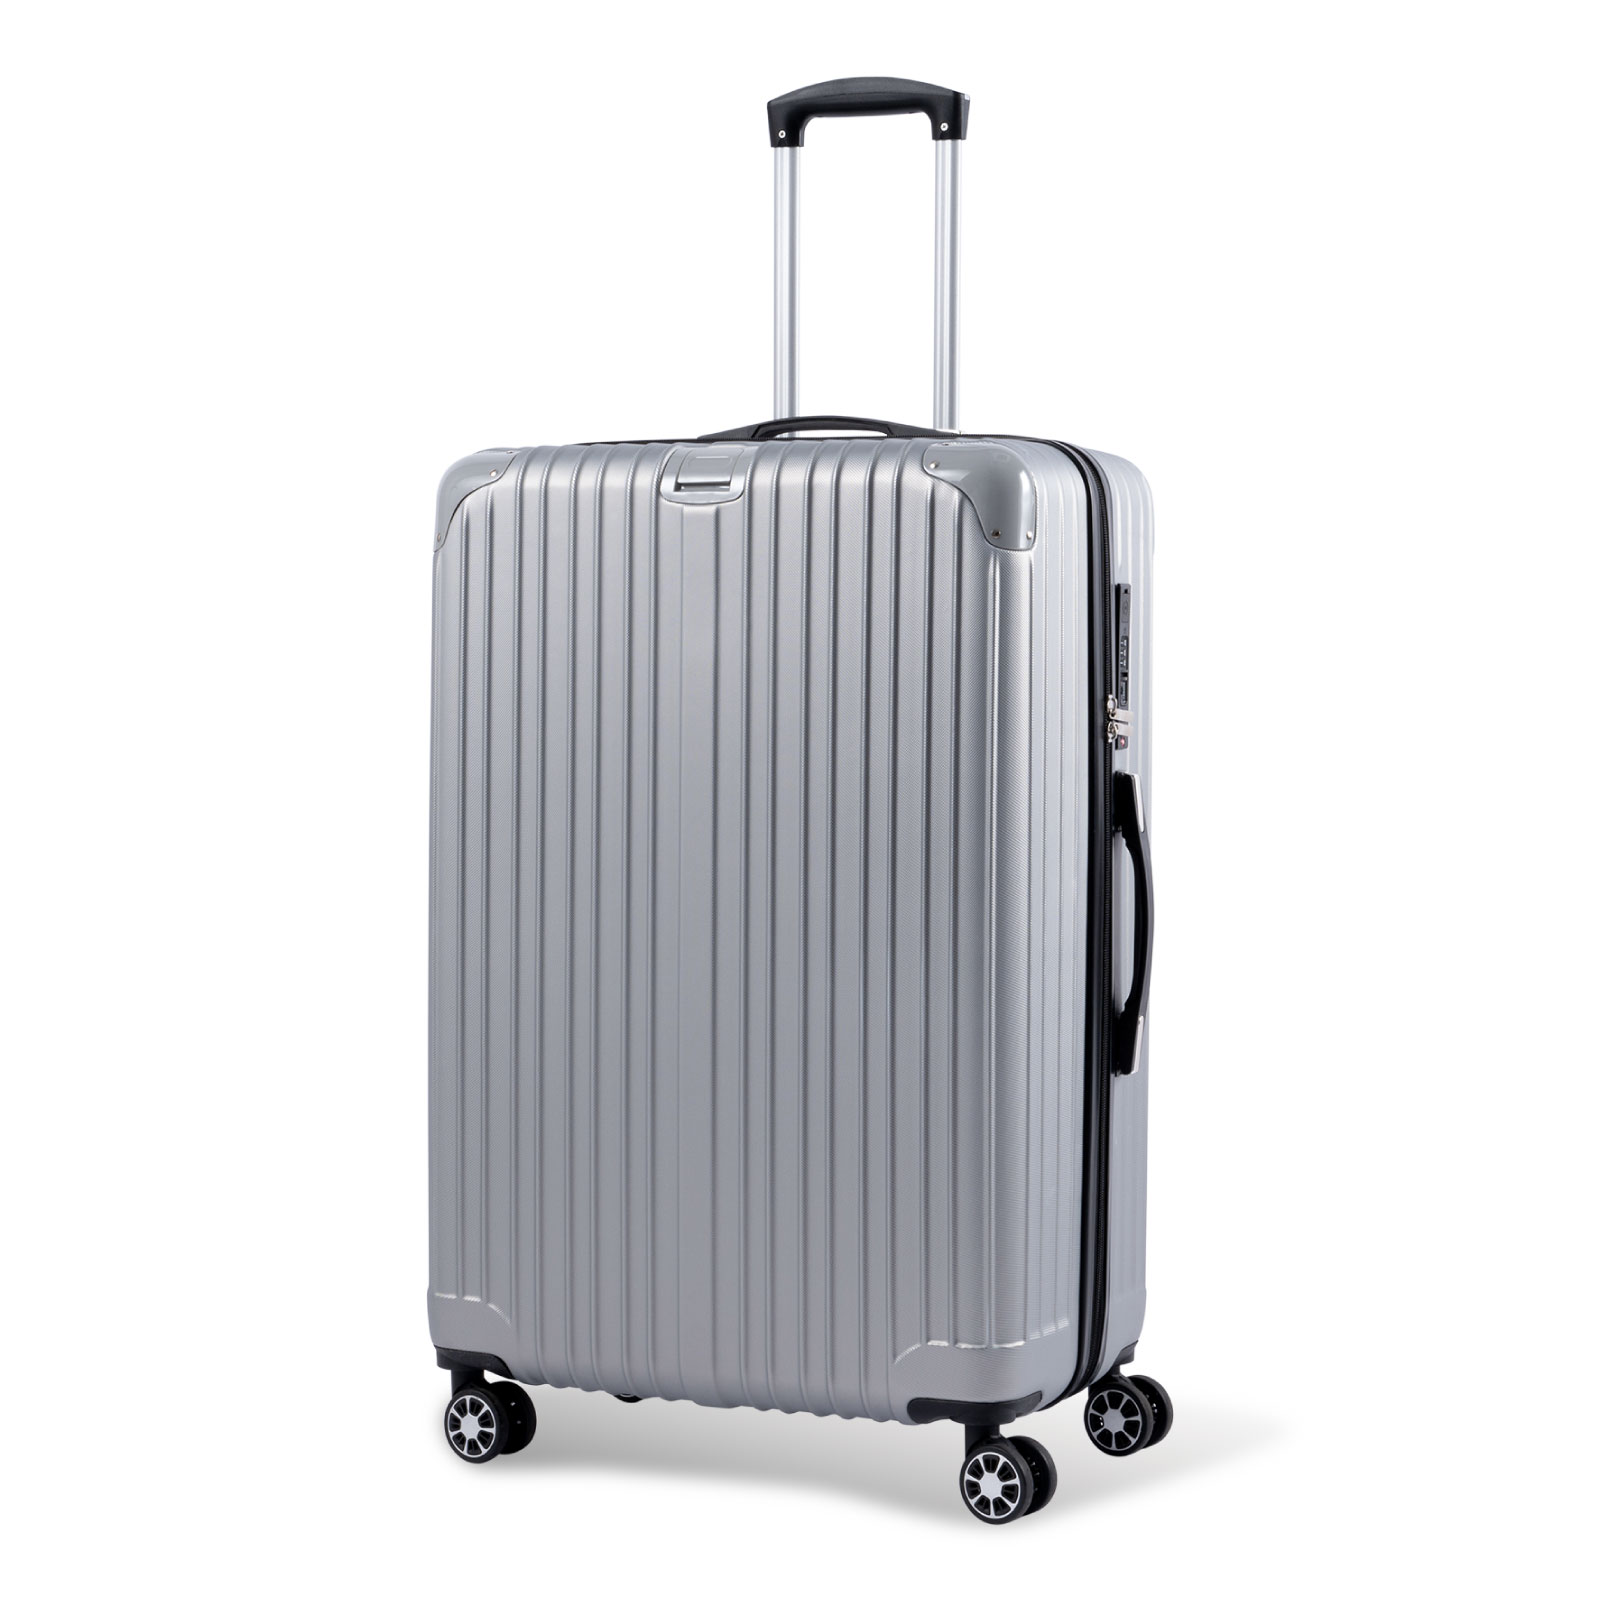 スーツケース USBポート付き キャリーケース Lサイズ キャリーバッグ トランク 7-14日泊用 大型 軽量 360度回転 大容量 ファスナー式  旅行 ビジネス sc113-28